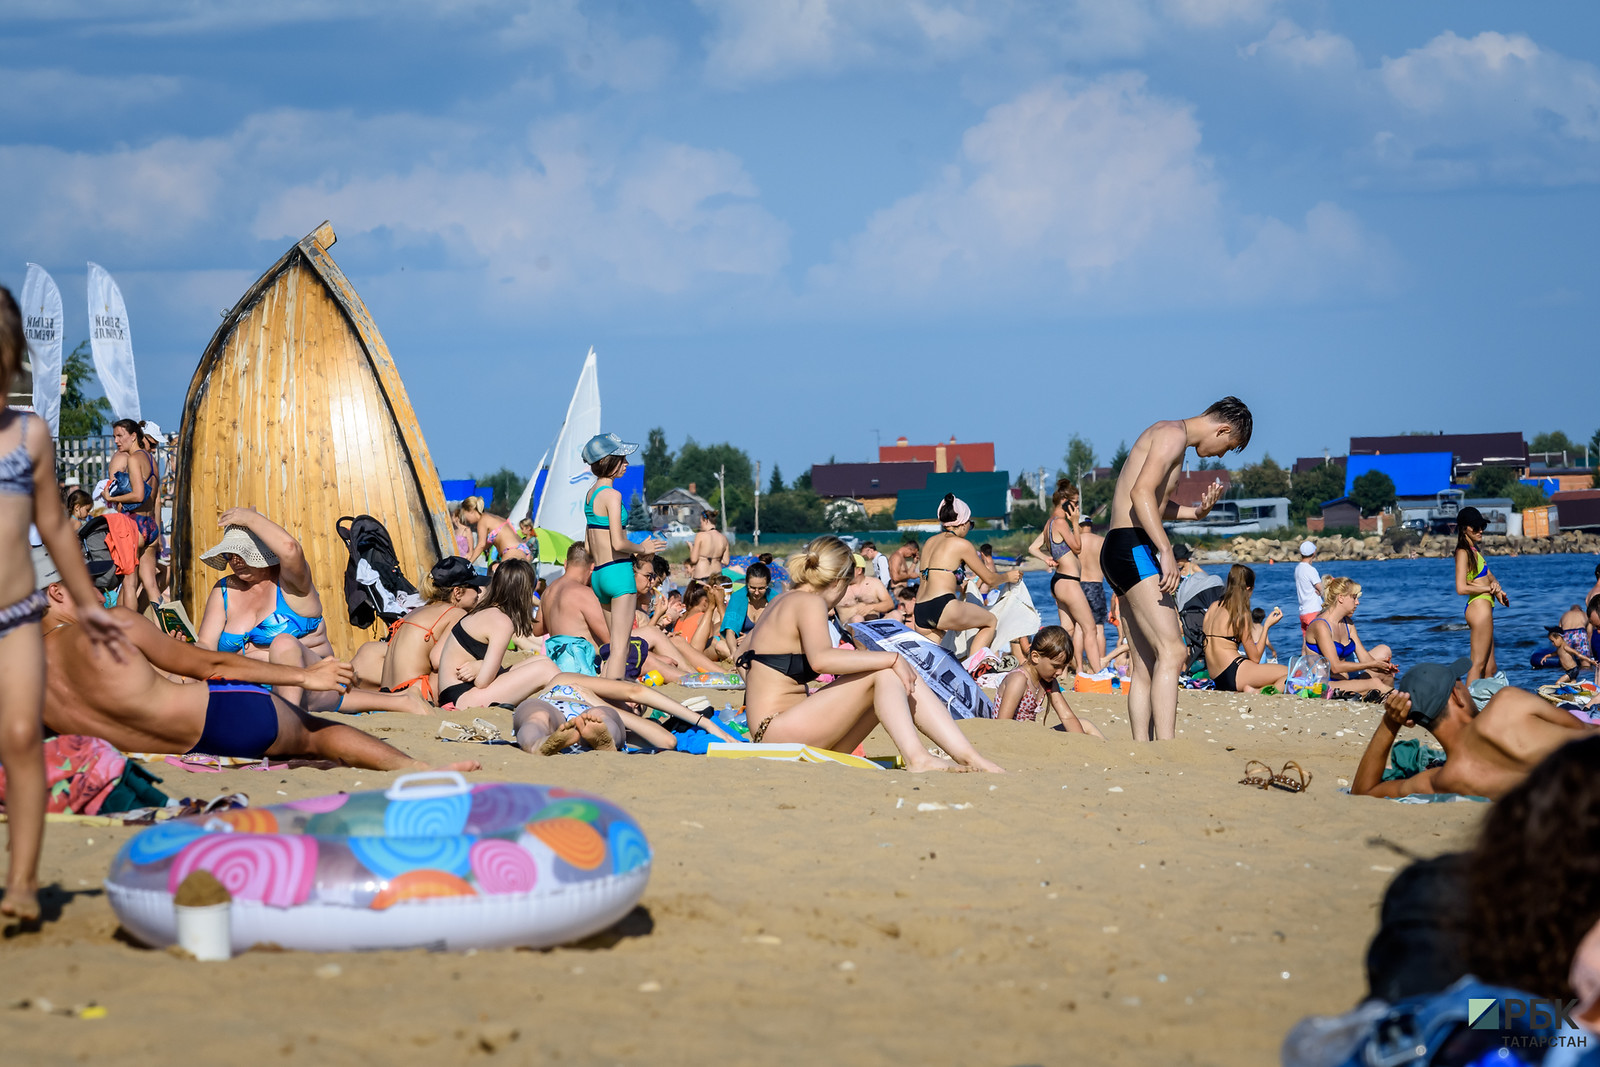 Жара аномальная: в Казани вырос спрос на товары для пляжа